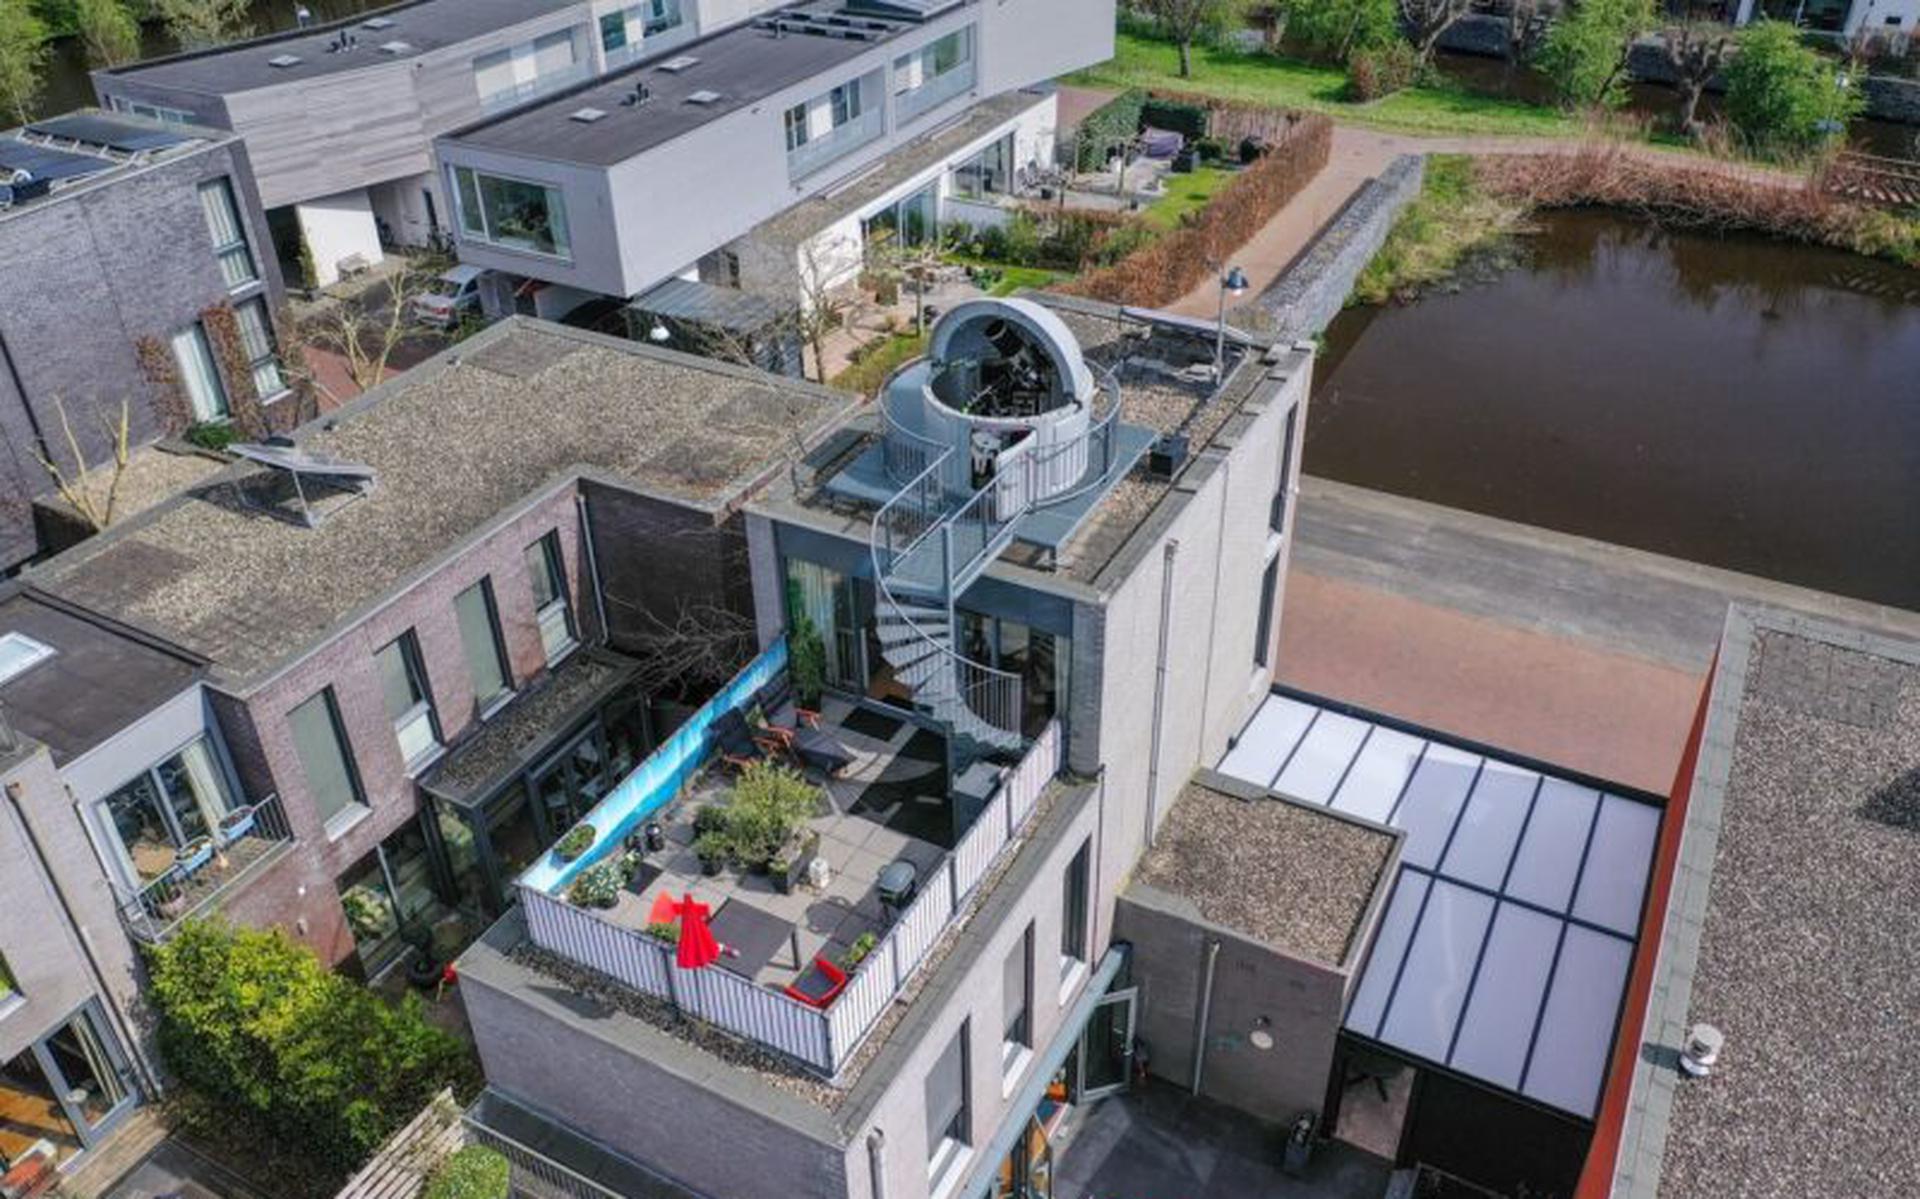 Sprong abstract groef Te koop in Groningen: huis met een sterrenwachtkoepel op het dak - Dagblad  van het Noorden